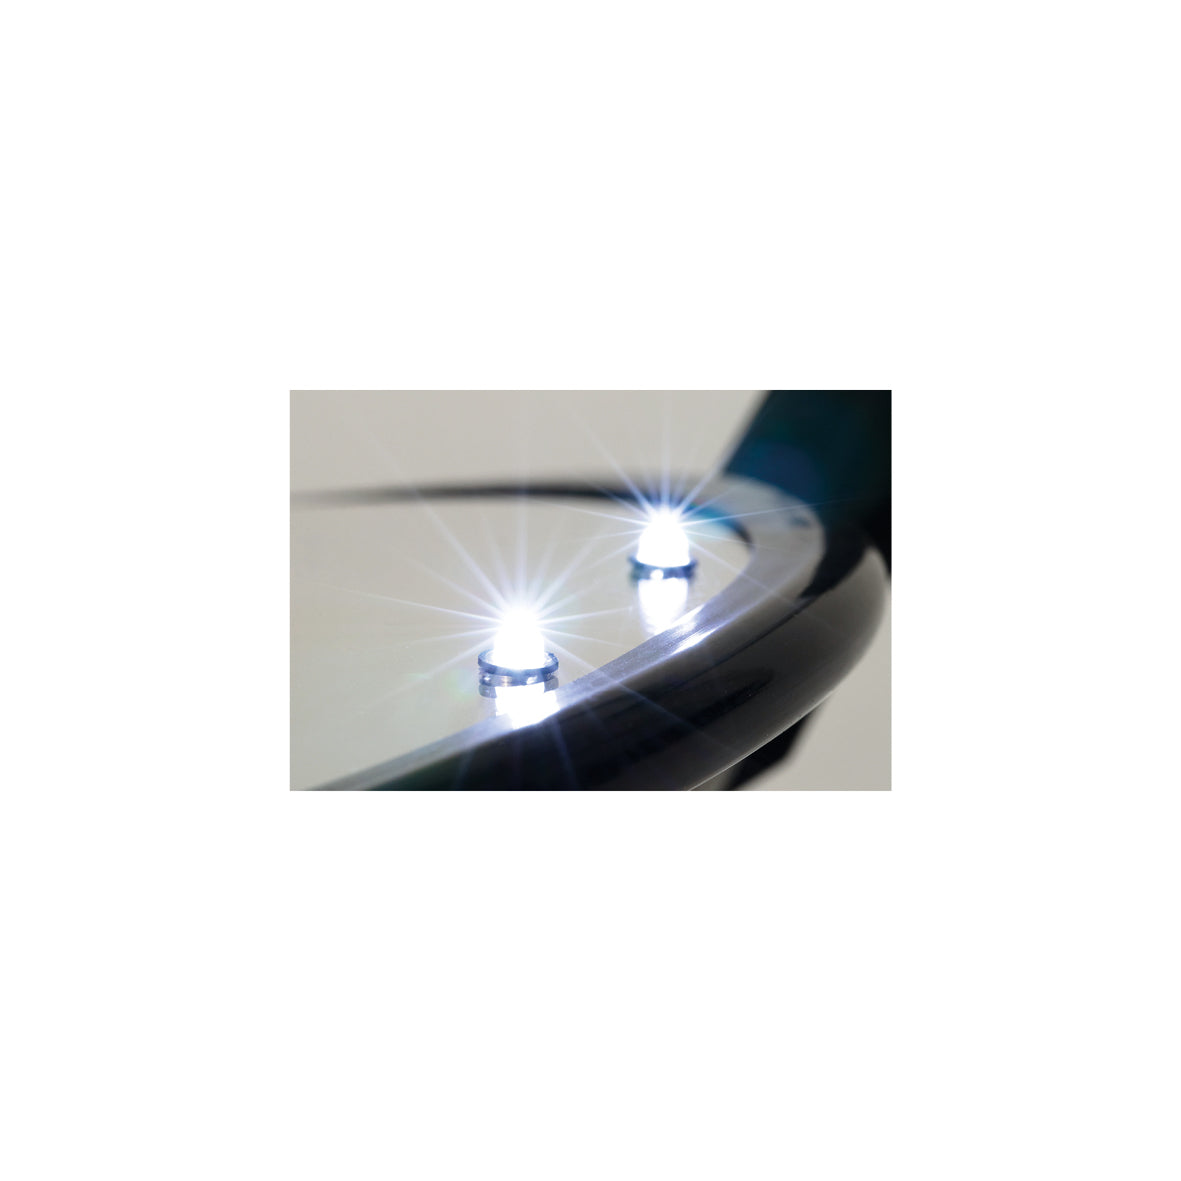 Kontrollspiegel Inspection, Acryl, ø 35 cm, mit 4 LED-Leuchten und Rädern